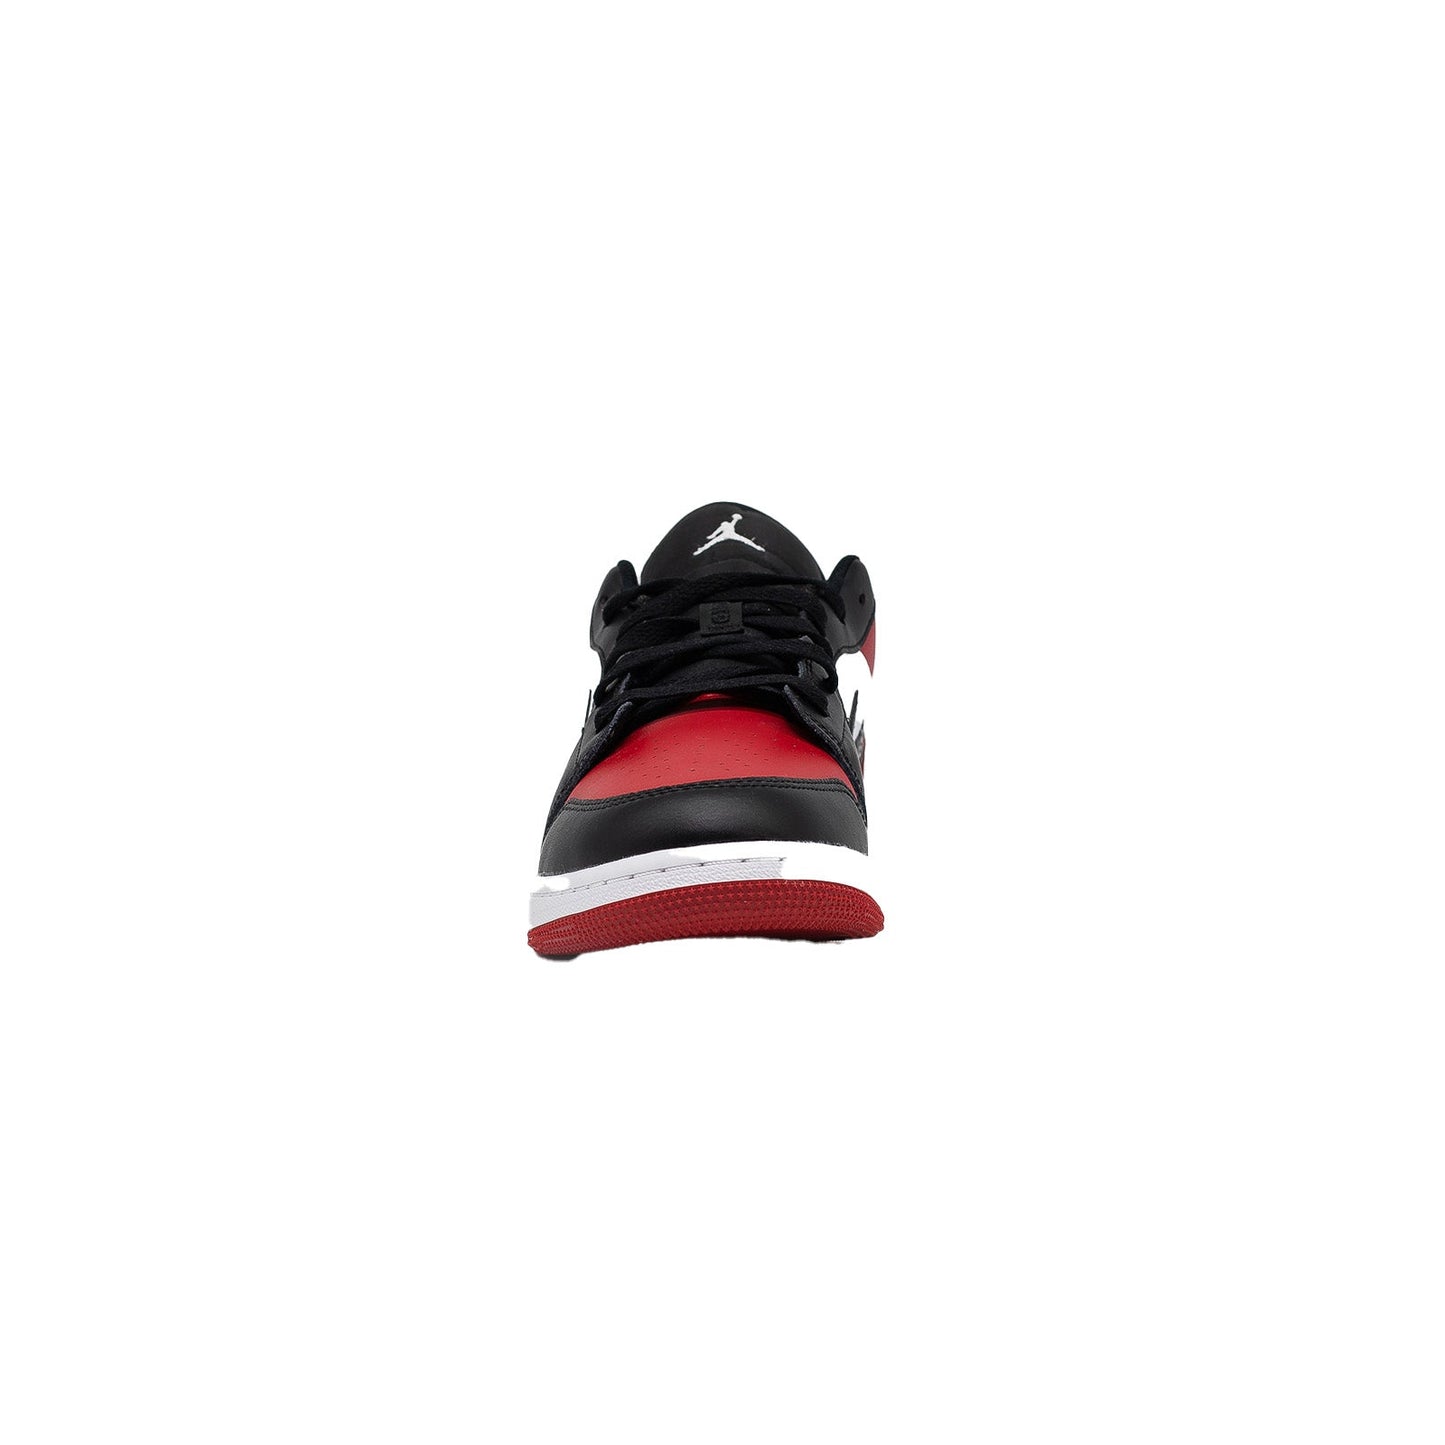 Air Jordan 1 Low (GS), Bred Toe